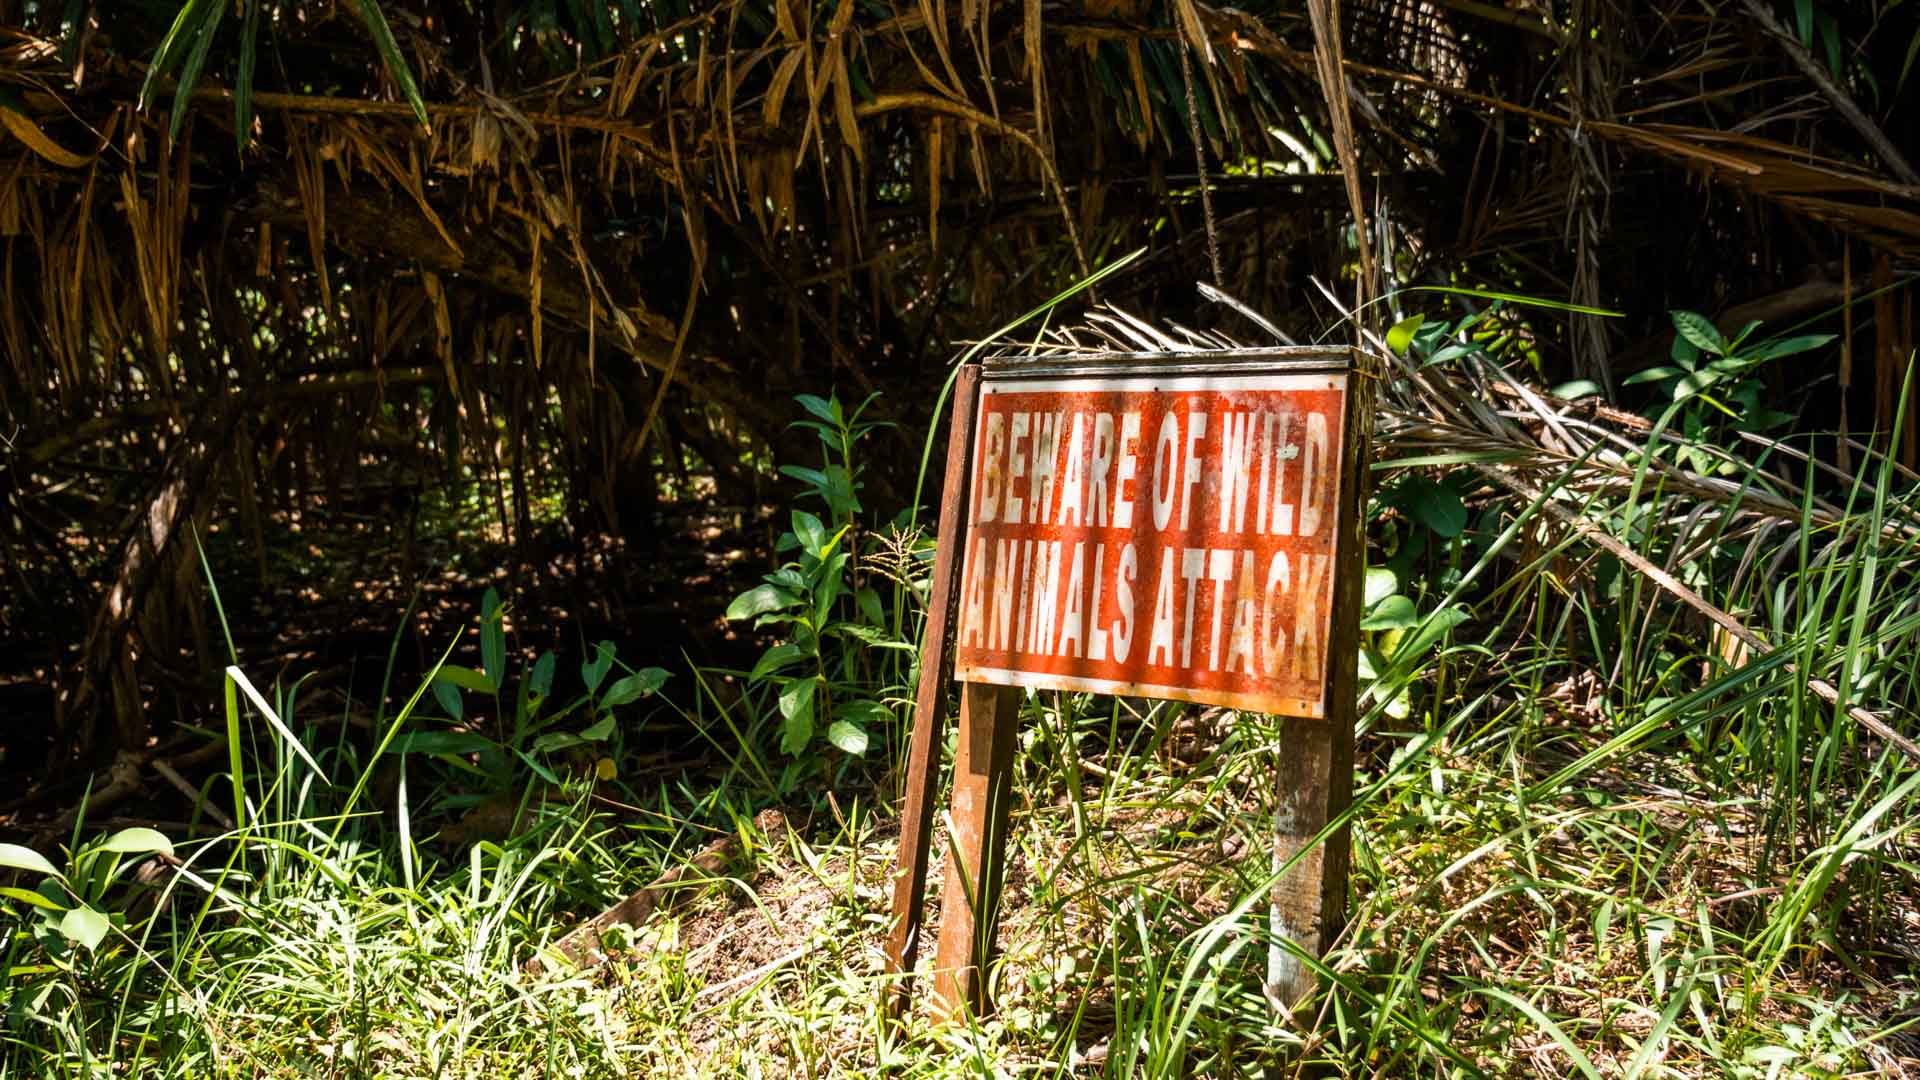 Ostrzeżenie o dzikich zwierzętach, Bako National Park, Borneo, Malezja